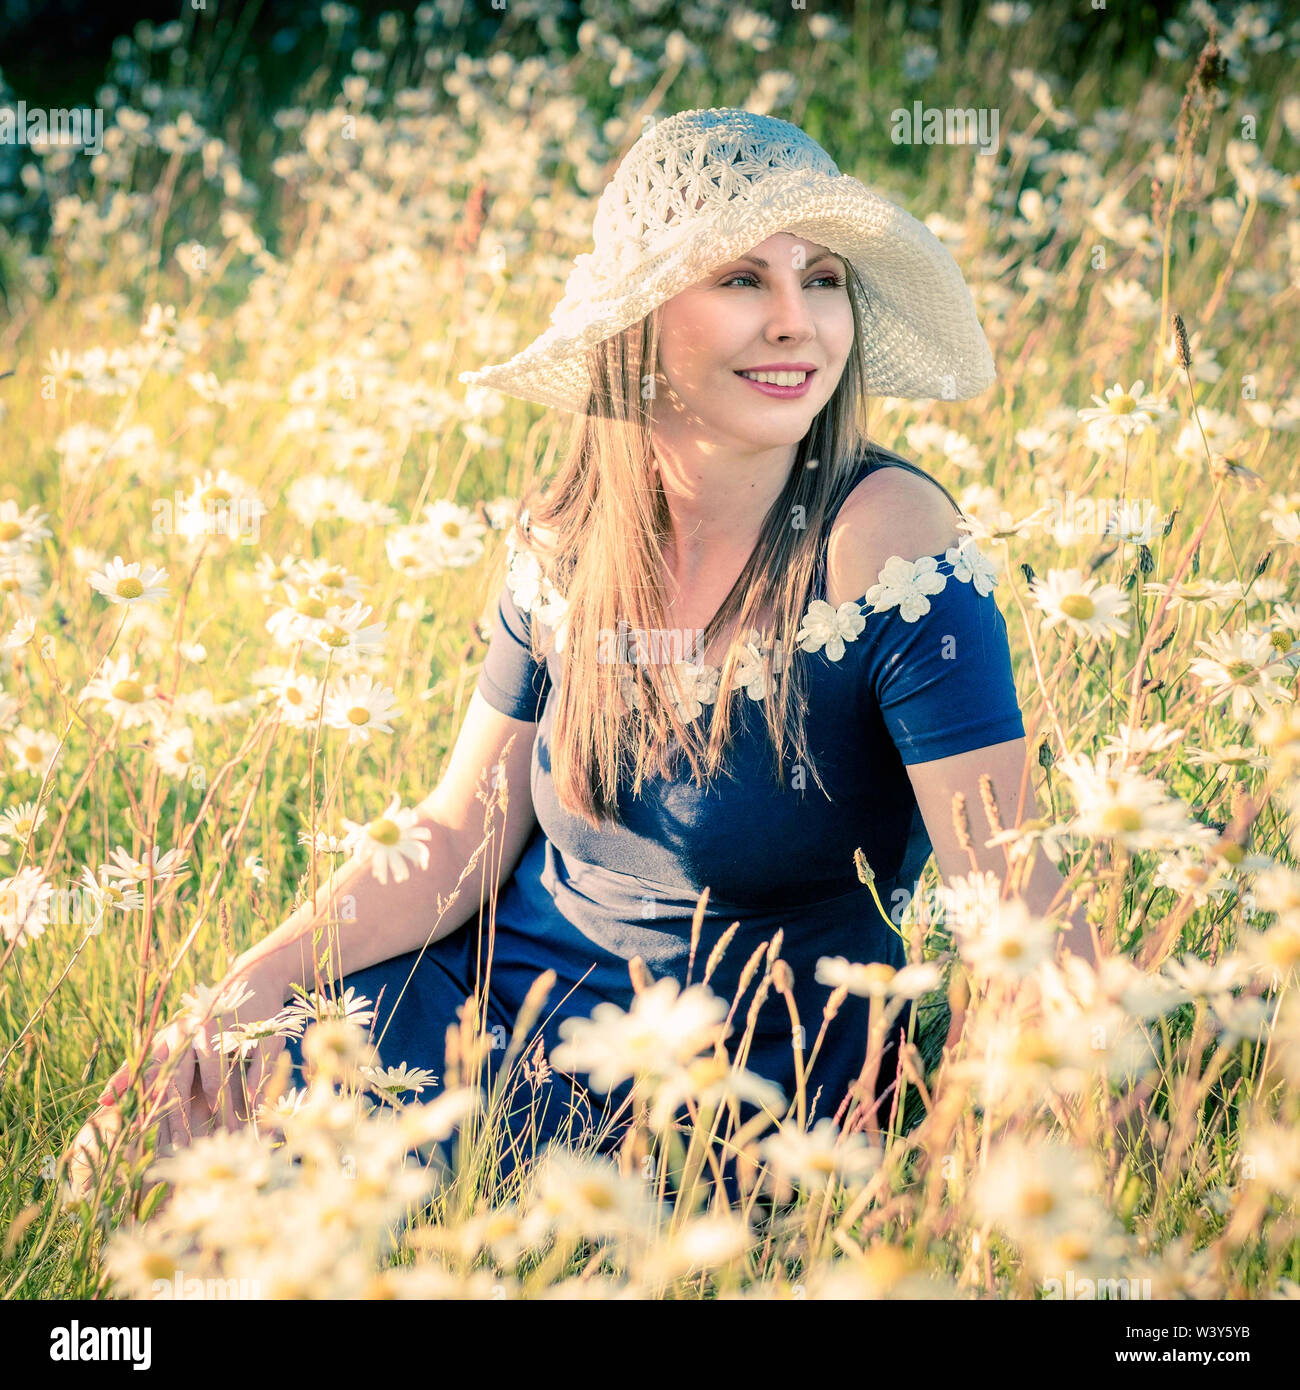 Stile di vita ritratto ambientale. Modello lettone nel campo dei fiori. Foto Stock